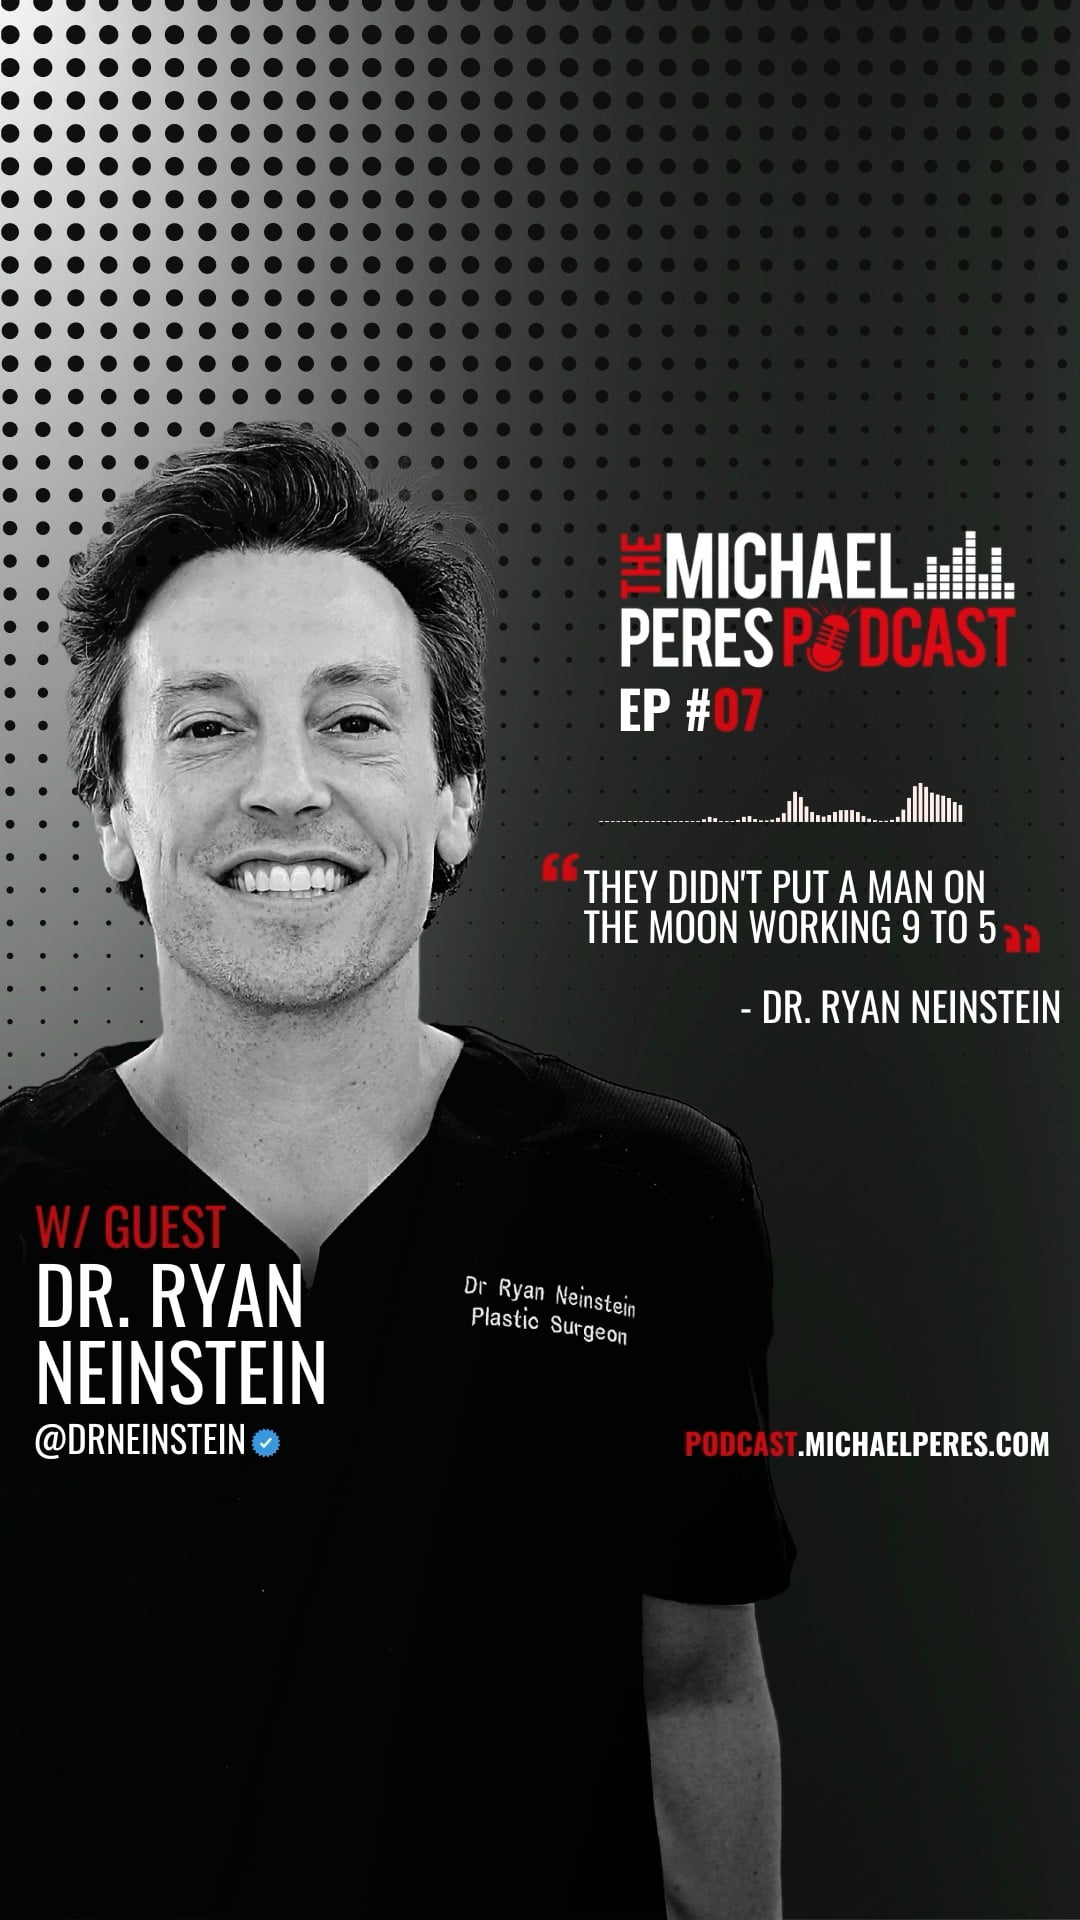 A conversation with dr. Ryan neinstein